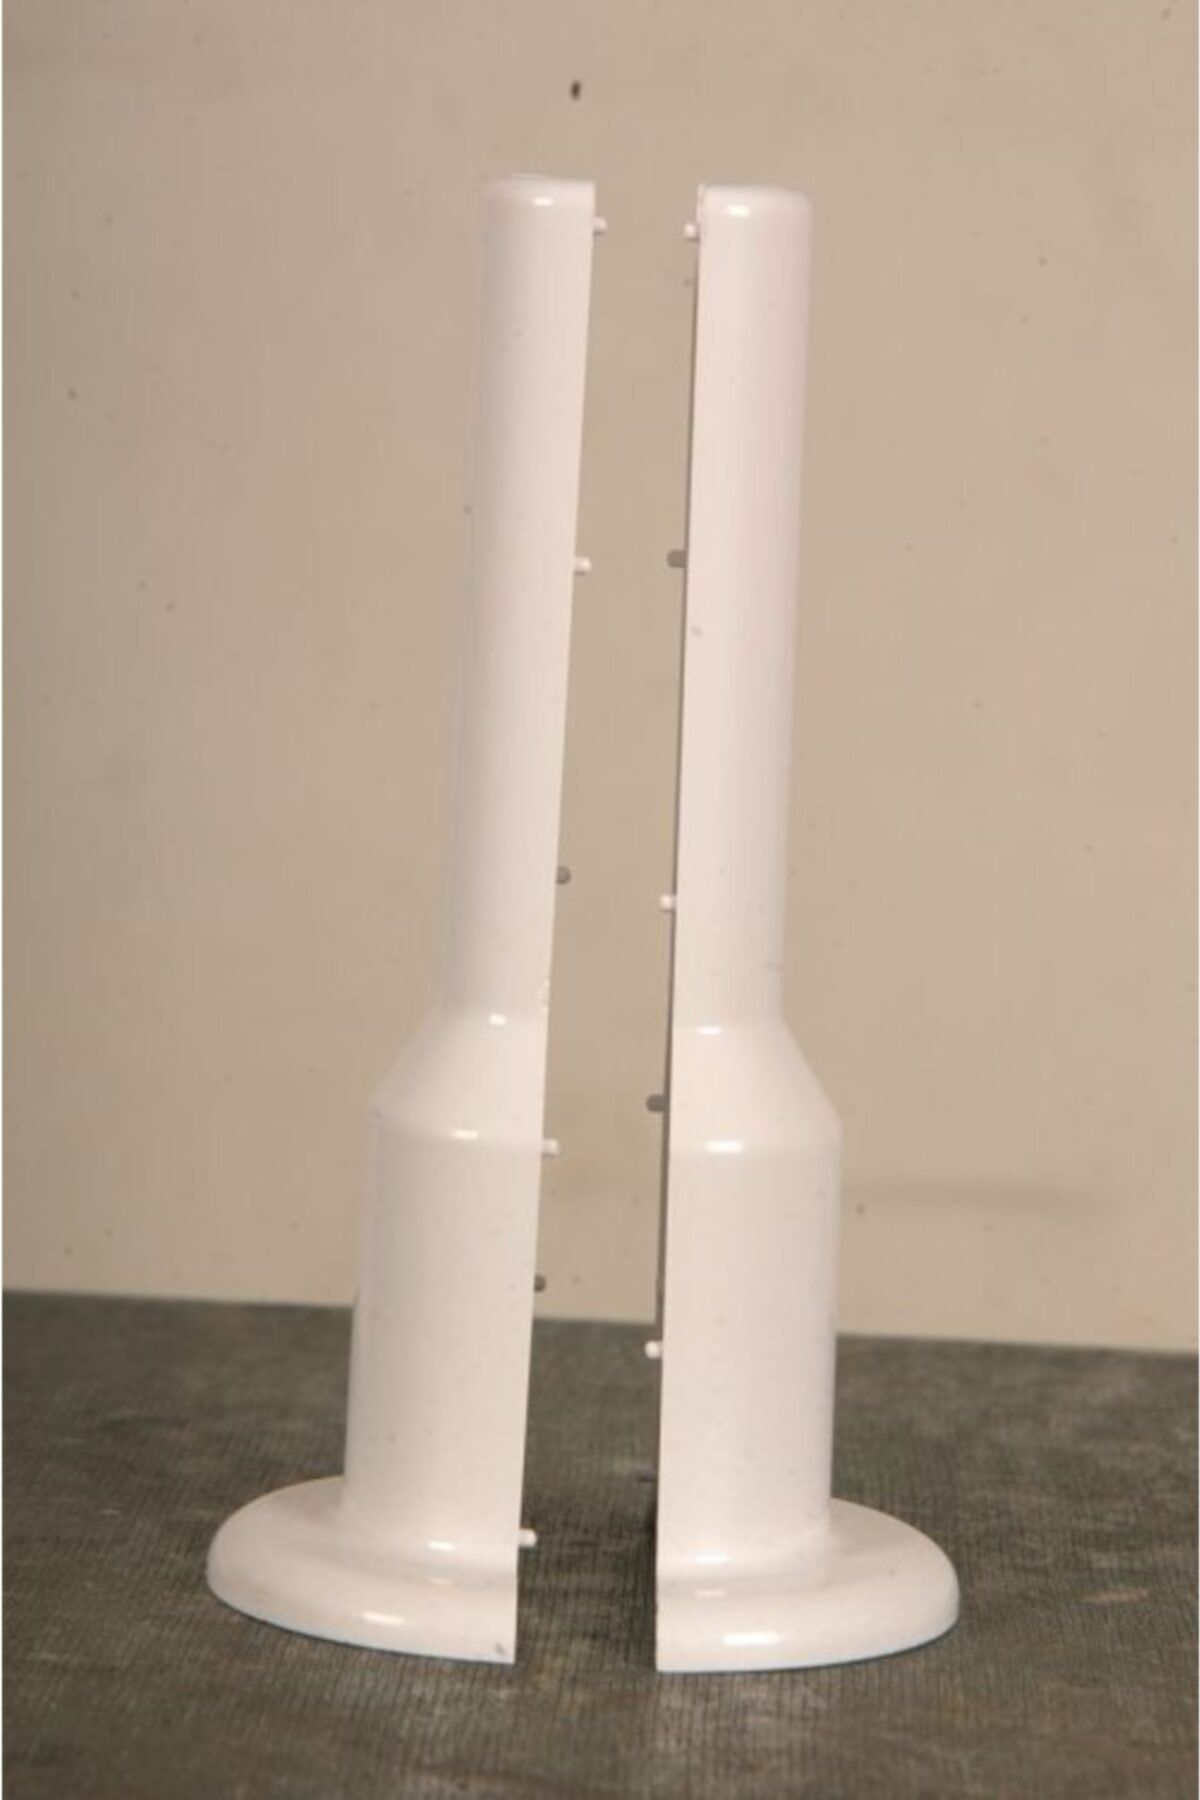 PartiAsya Radyatör Petek Boru Gizleme Aparatı Beyaz (16 Cm Uzunluk, Pex Boruya Uygundur)